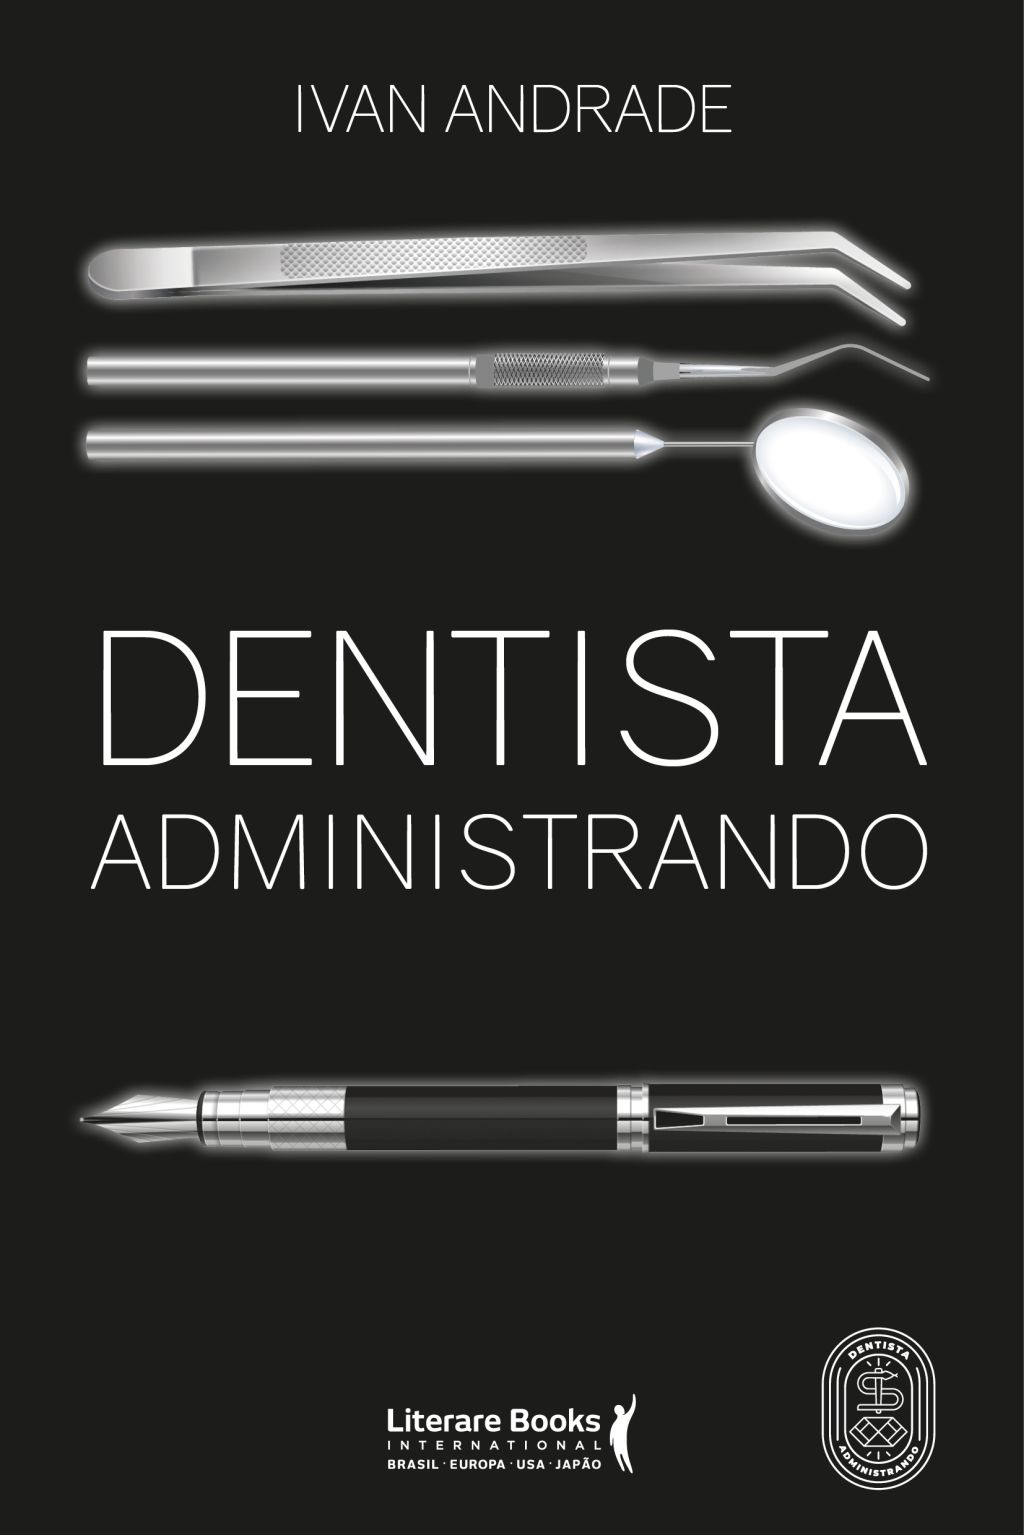 Literare Books International lança “Dentista Administrando”